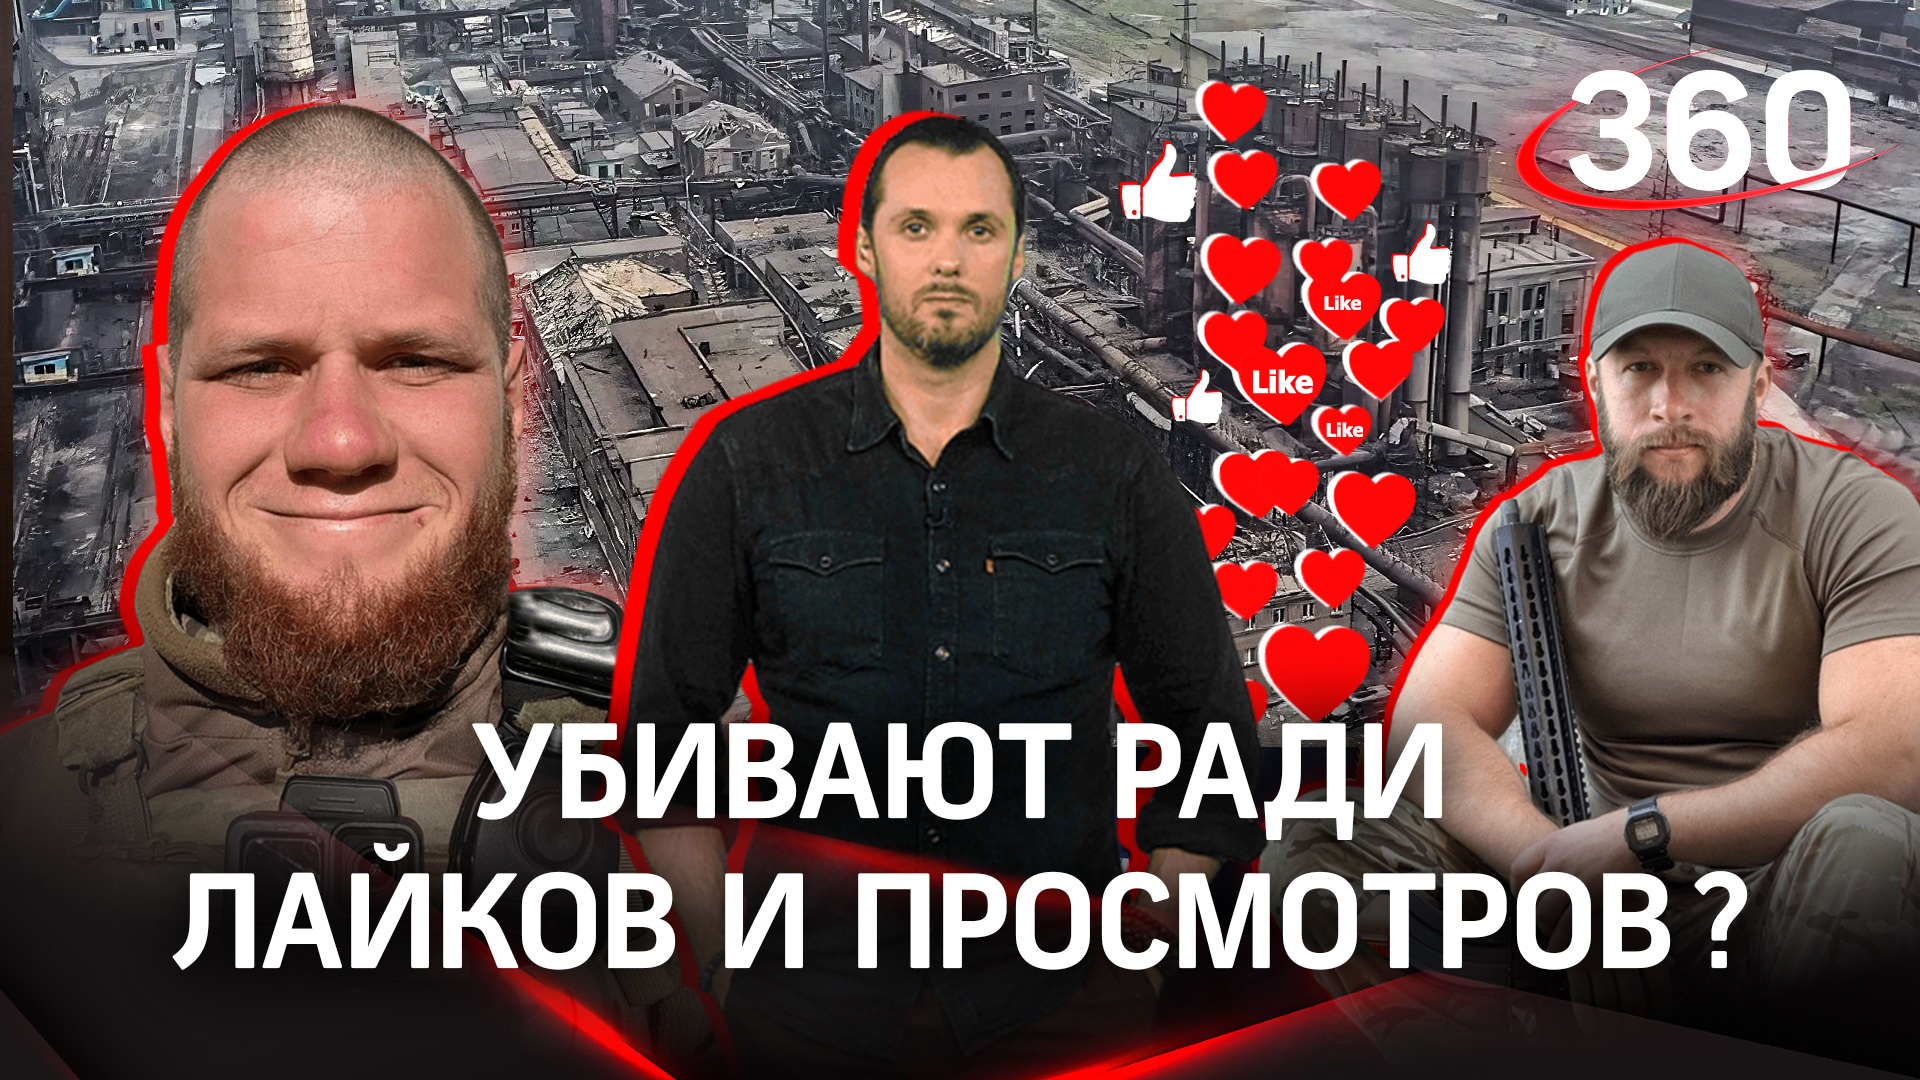 «Убивают ради видеороликов»: украинские неонацисты казнят мирных людей чтобы набрать лайки и просмот